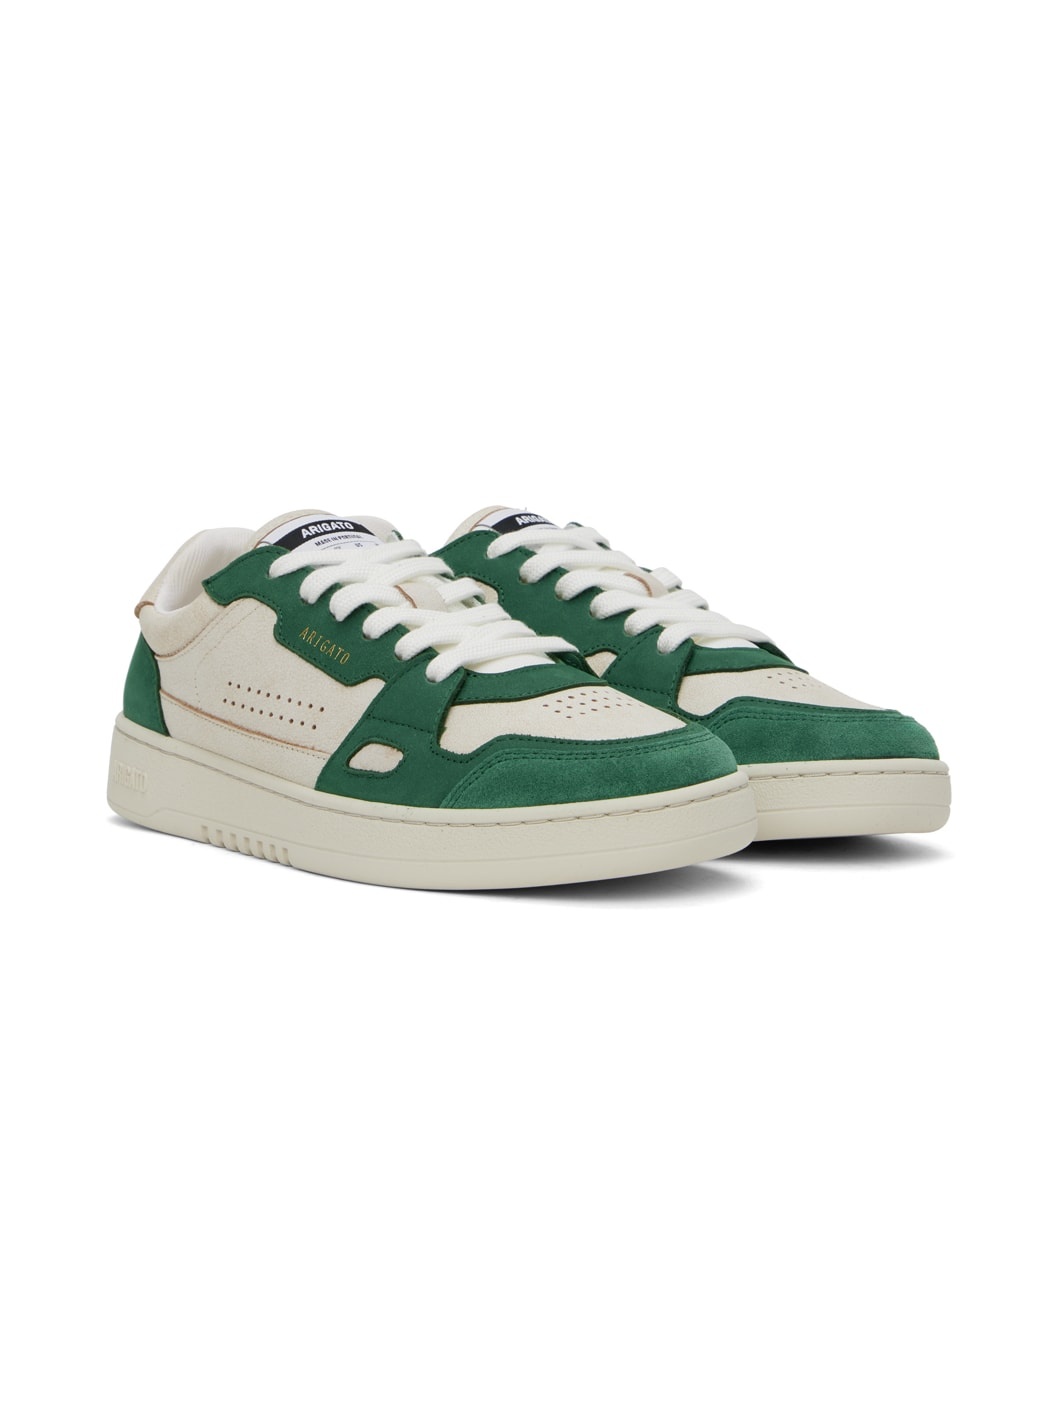 Beige & Green Dice Lo Sneakers - 4